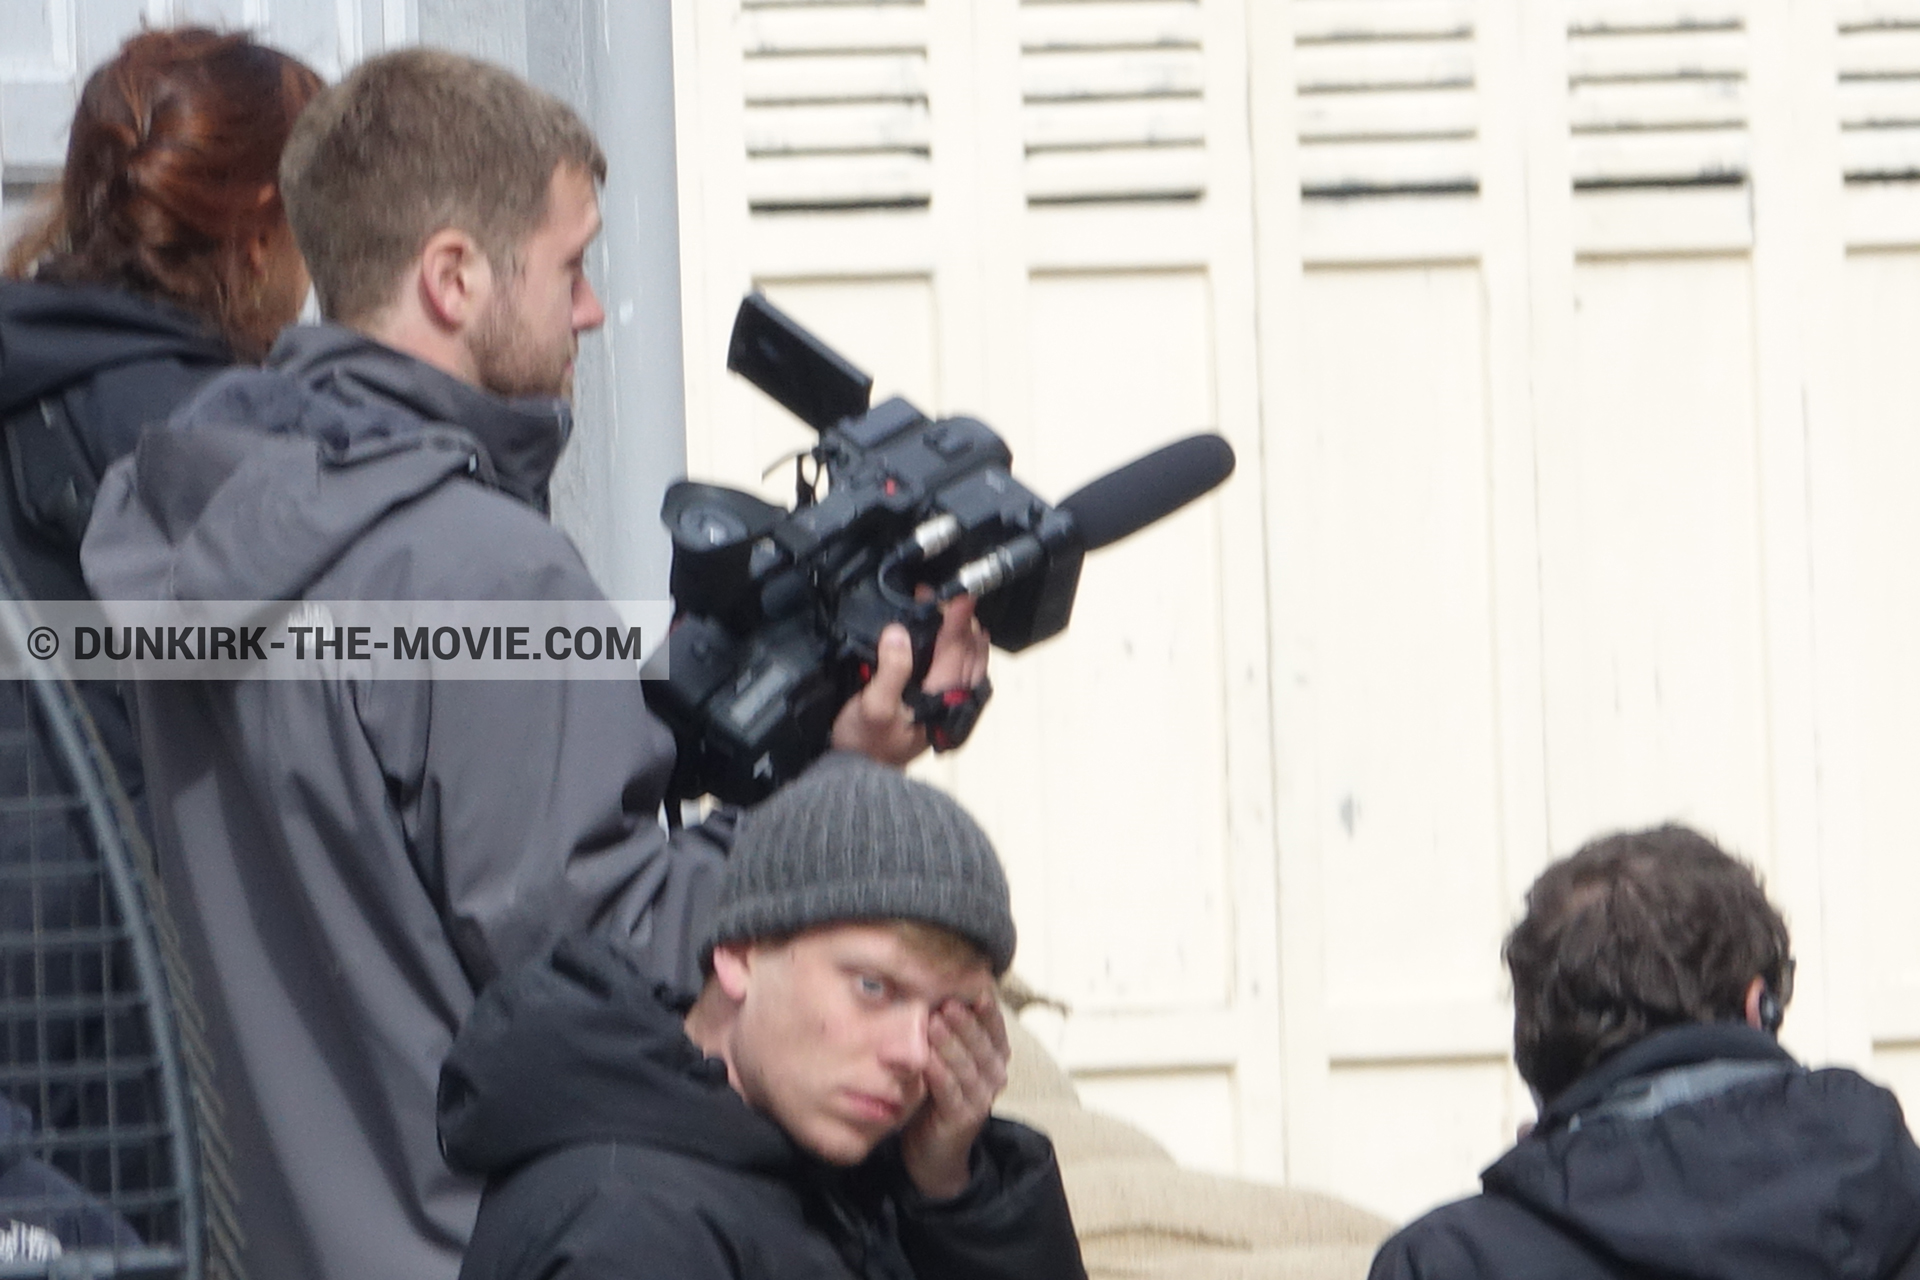 Fotos con calle Belle Rade, equipo técnica,  durante el rodaje de la película Dunkerque de Nolan